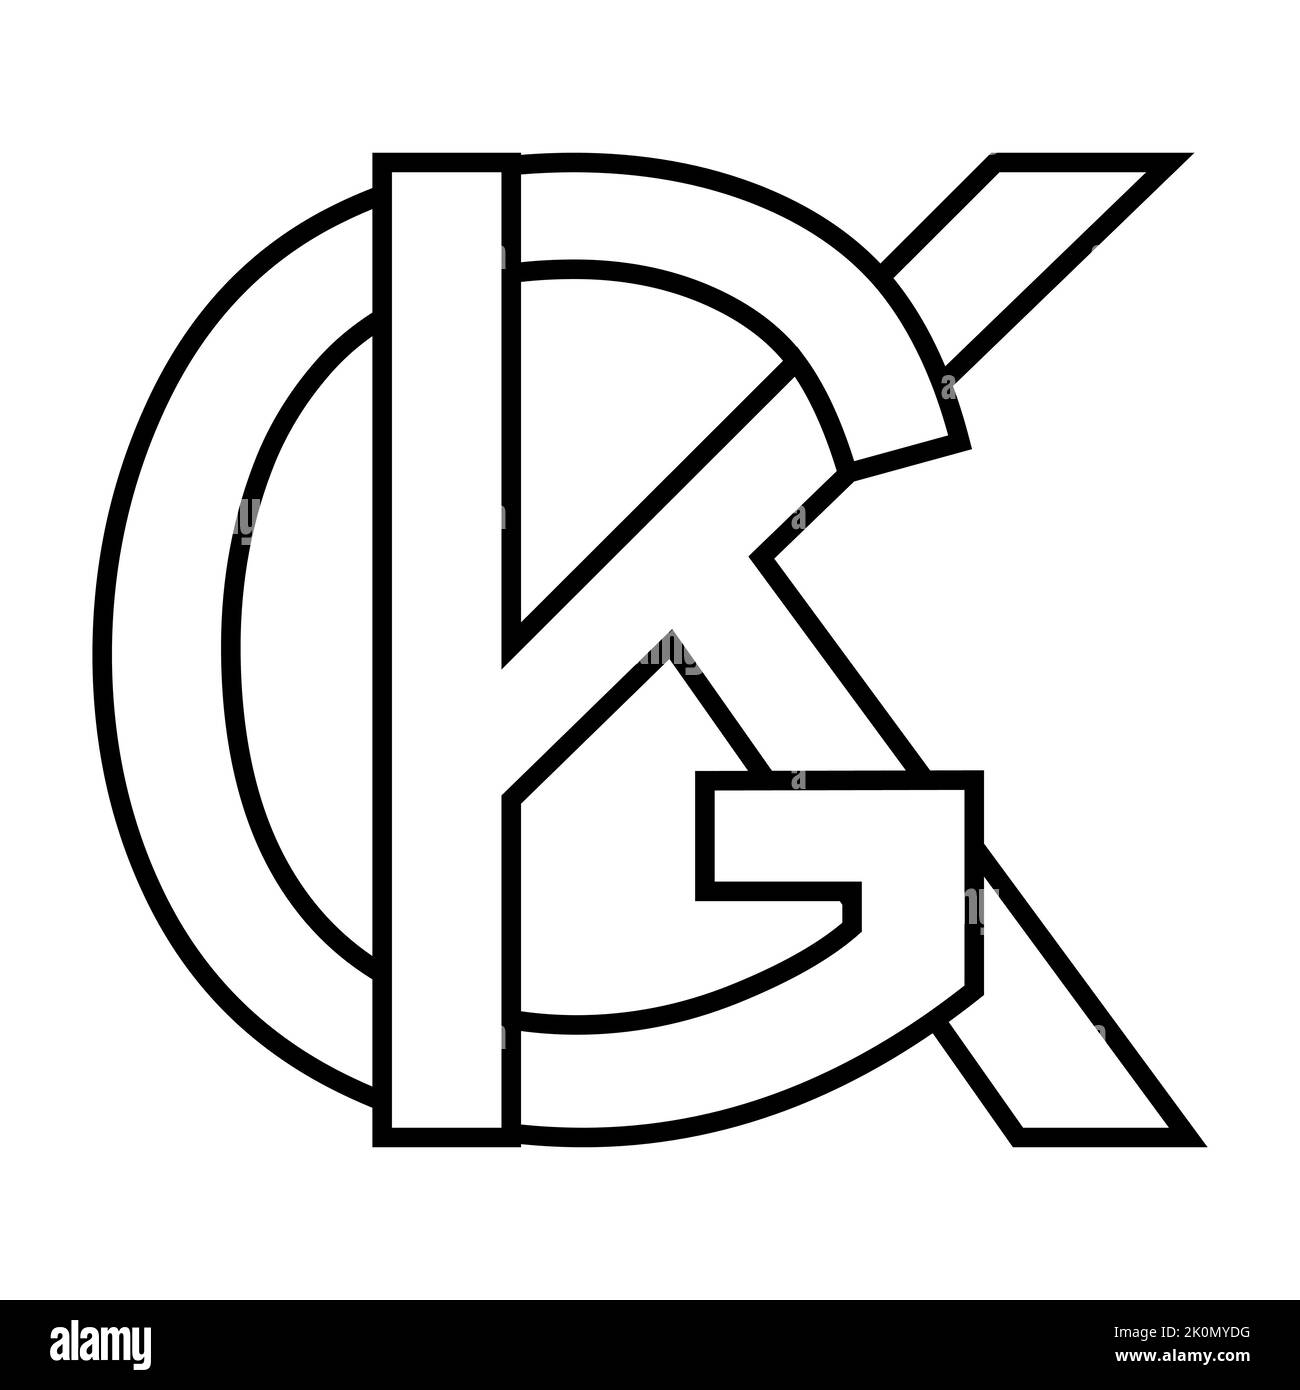 Logotipo signo gk kg, icono nft letras entrelazadas g k Ilustración del Vector